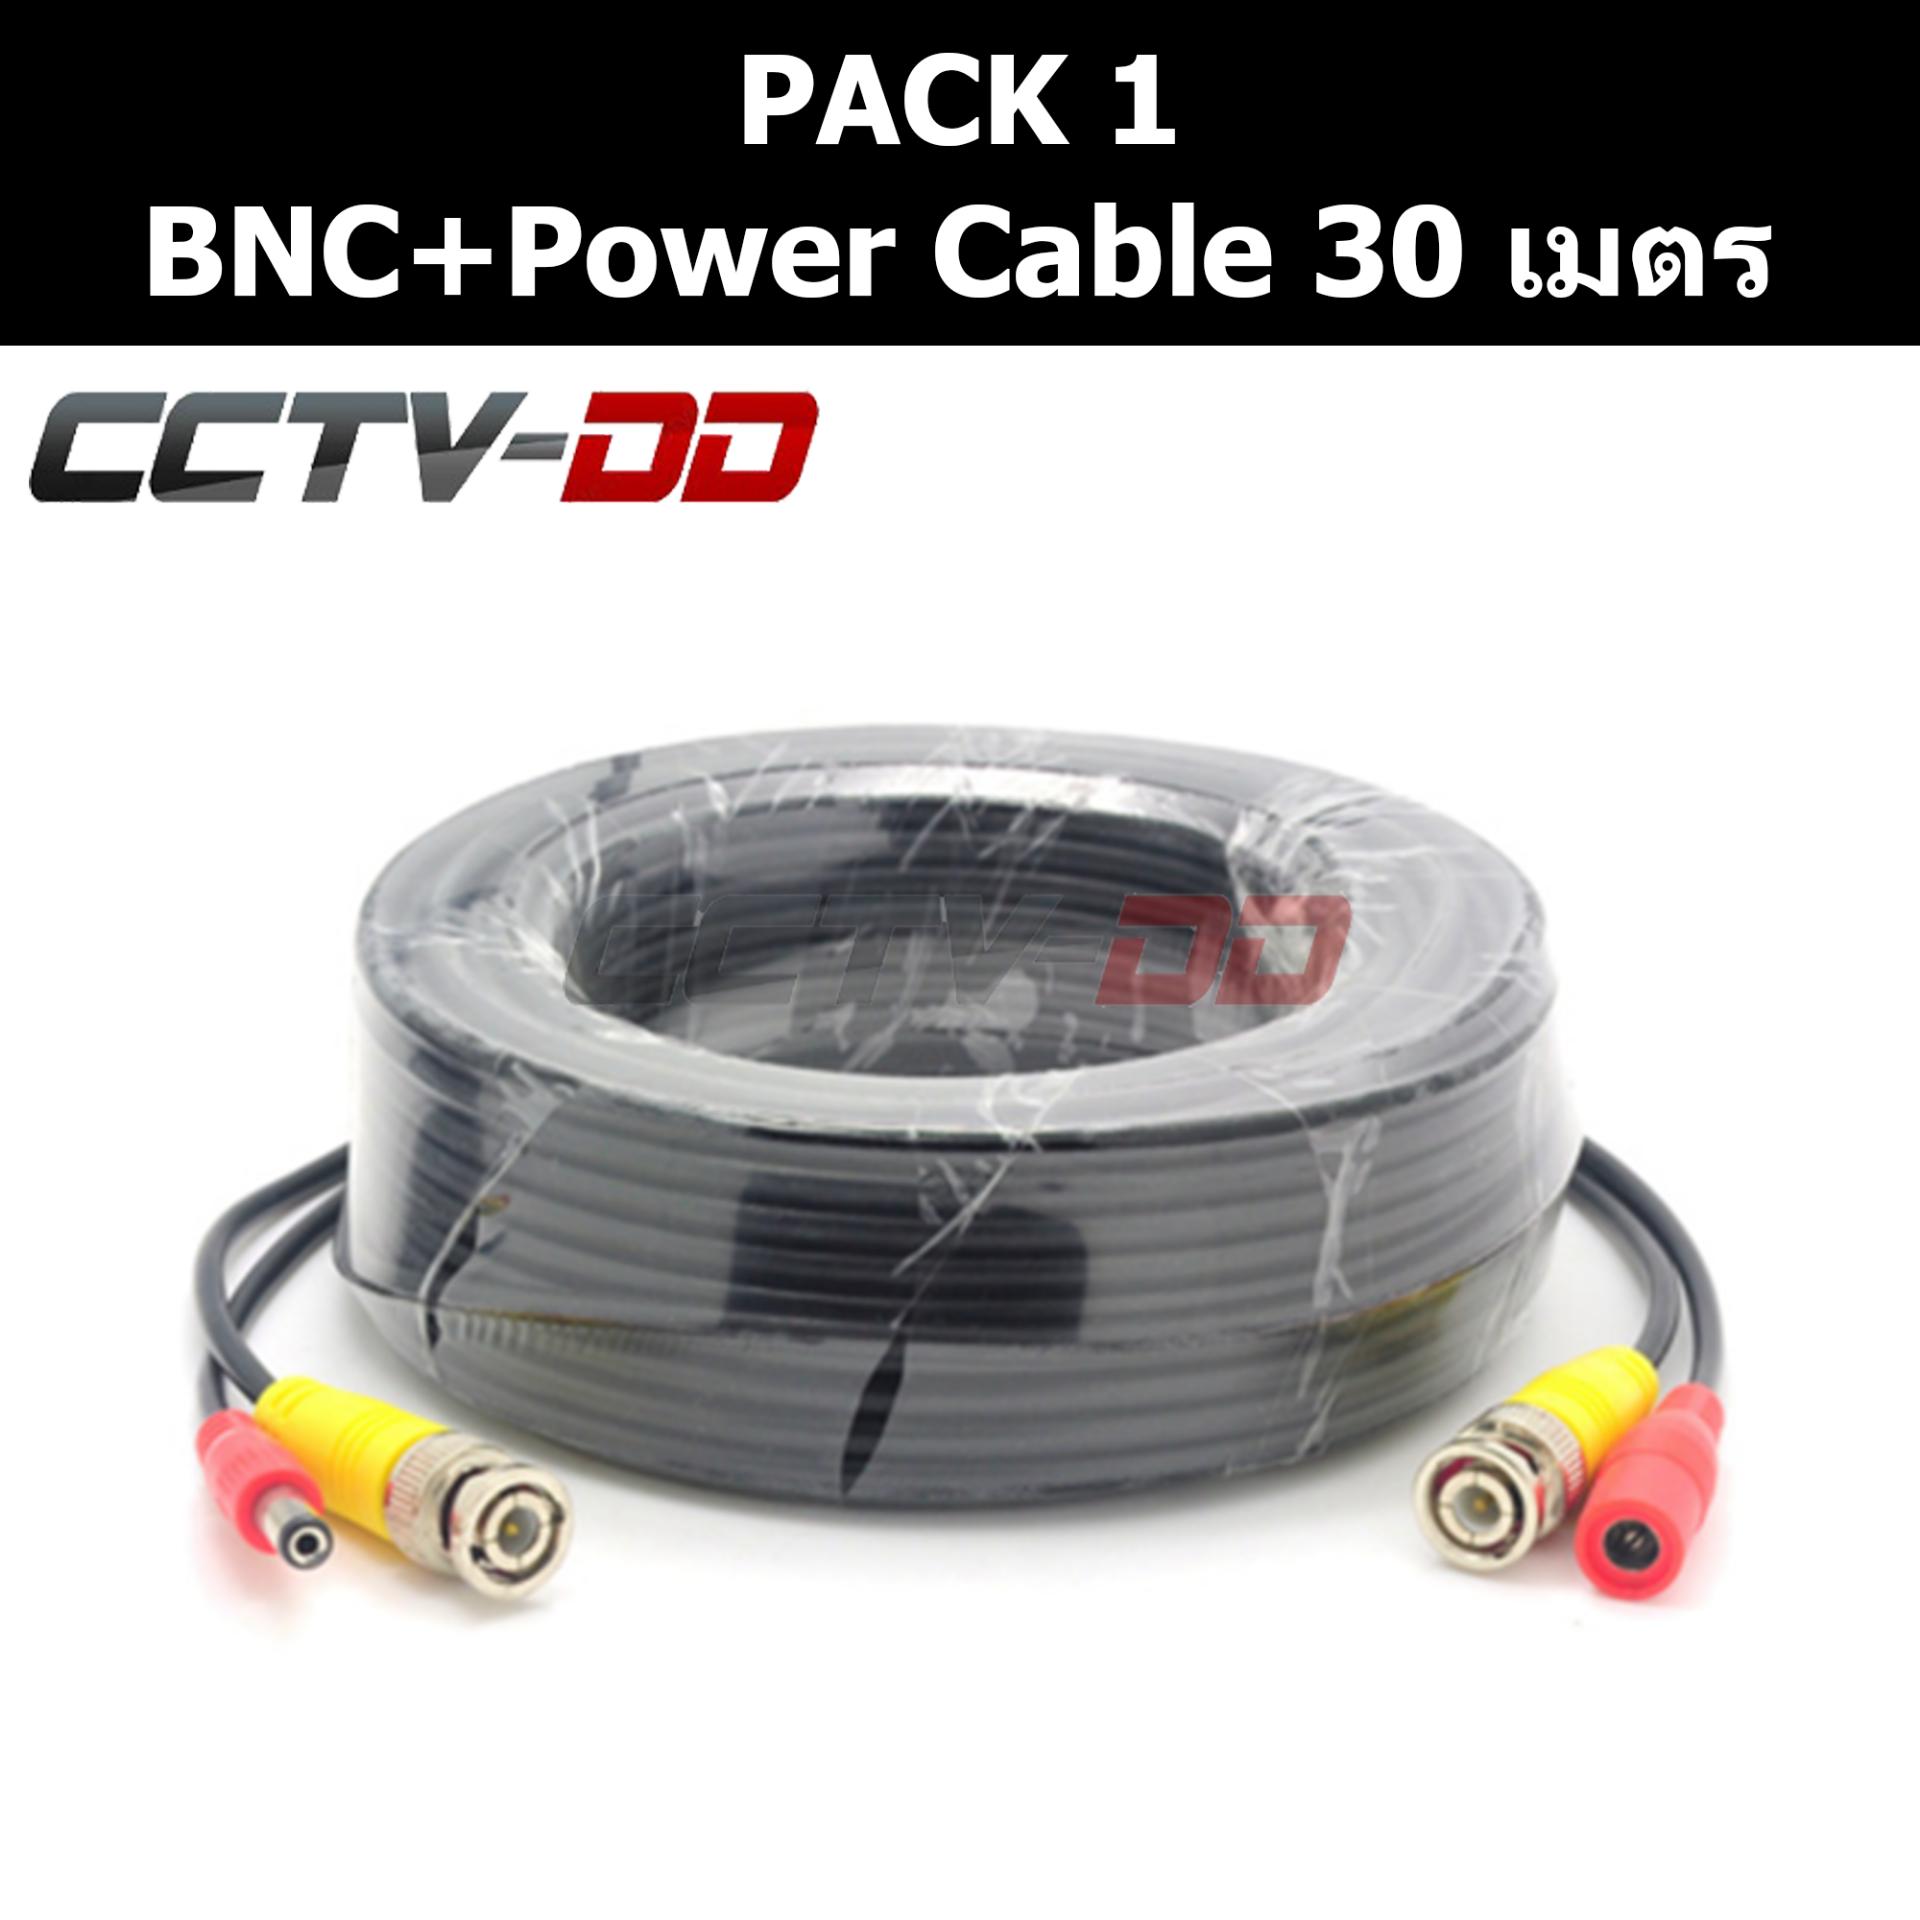 สายสำเร็จรูป สำหรับกล้องวงจรปิด BNC+power cable 30 เมตร Pack 1